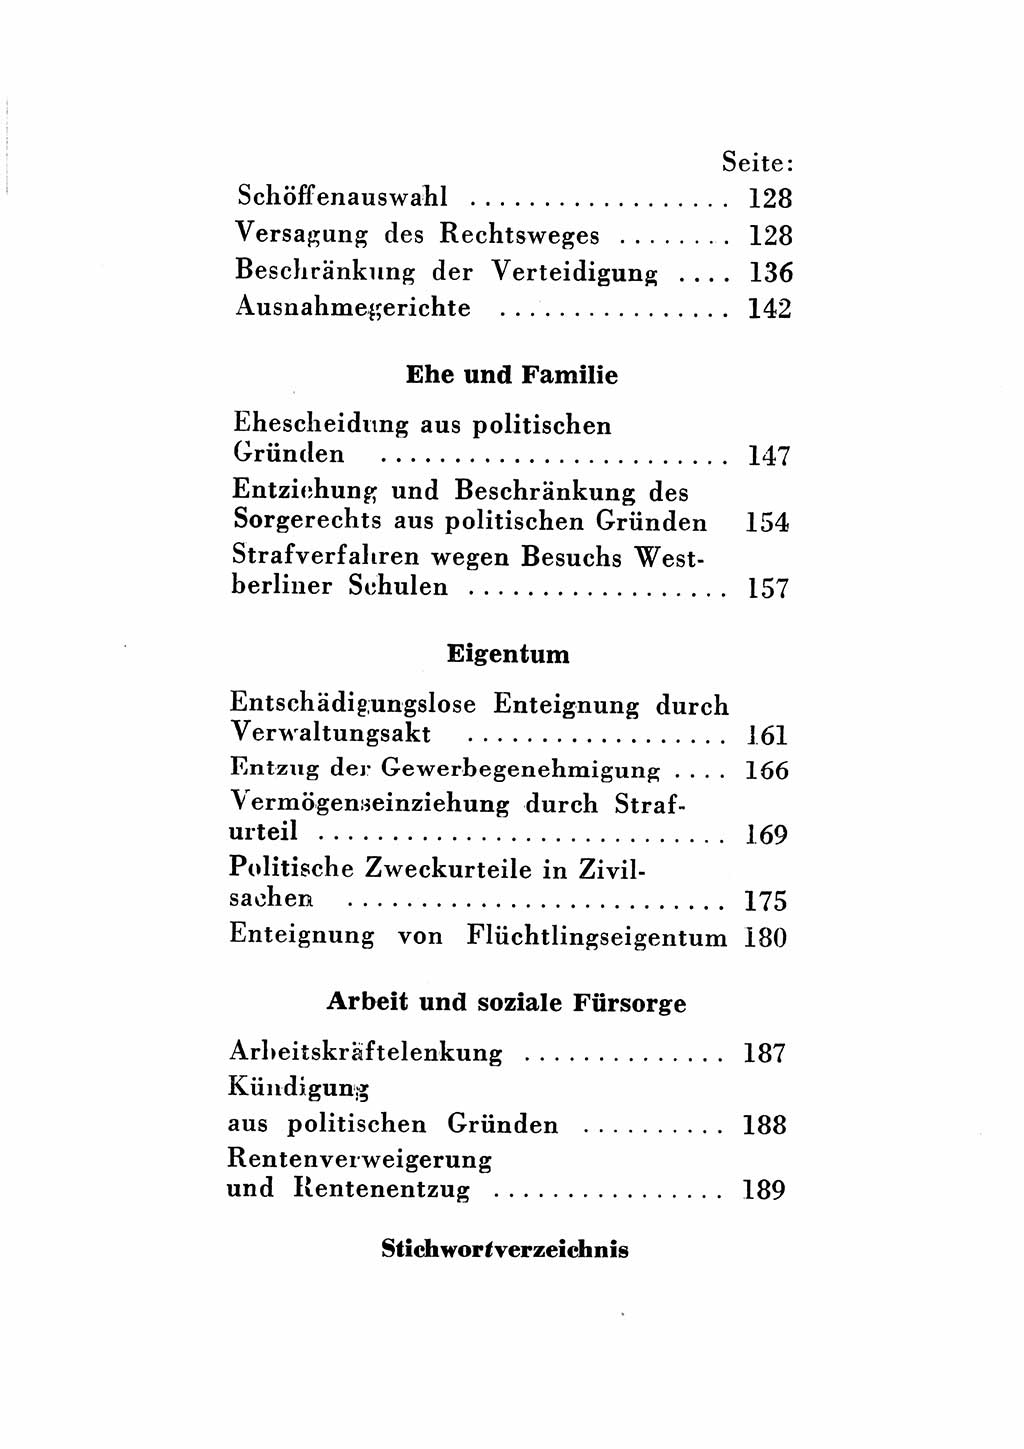 Katalog des Unrechts, Untersuchungsausschuß Freiheitlicher Juristen (UfJ) [Bundesrepublik Deutschland (BRD)] 1956, Seite 10 (Kat. UnR. UfJ BRD 1956, S. 10)